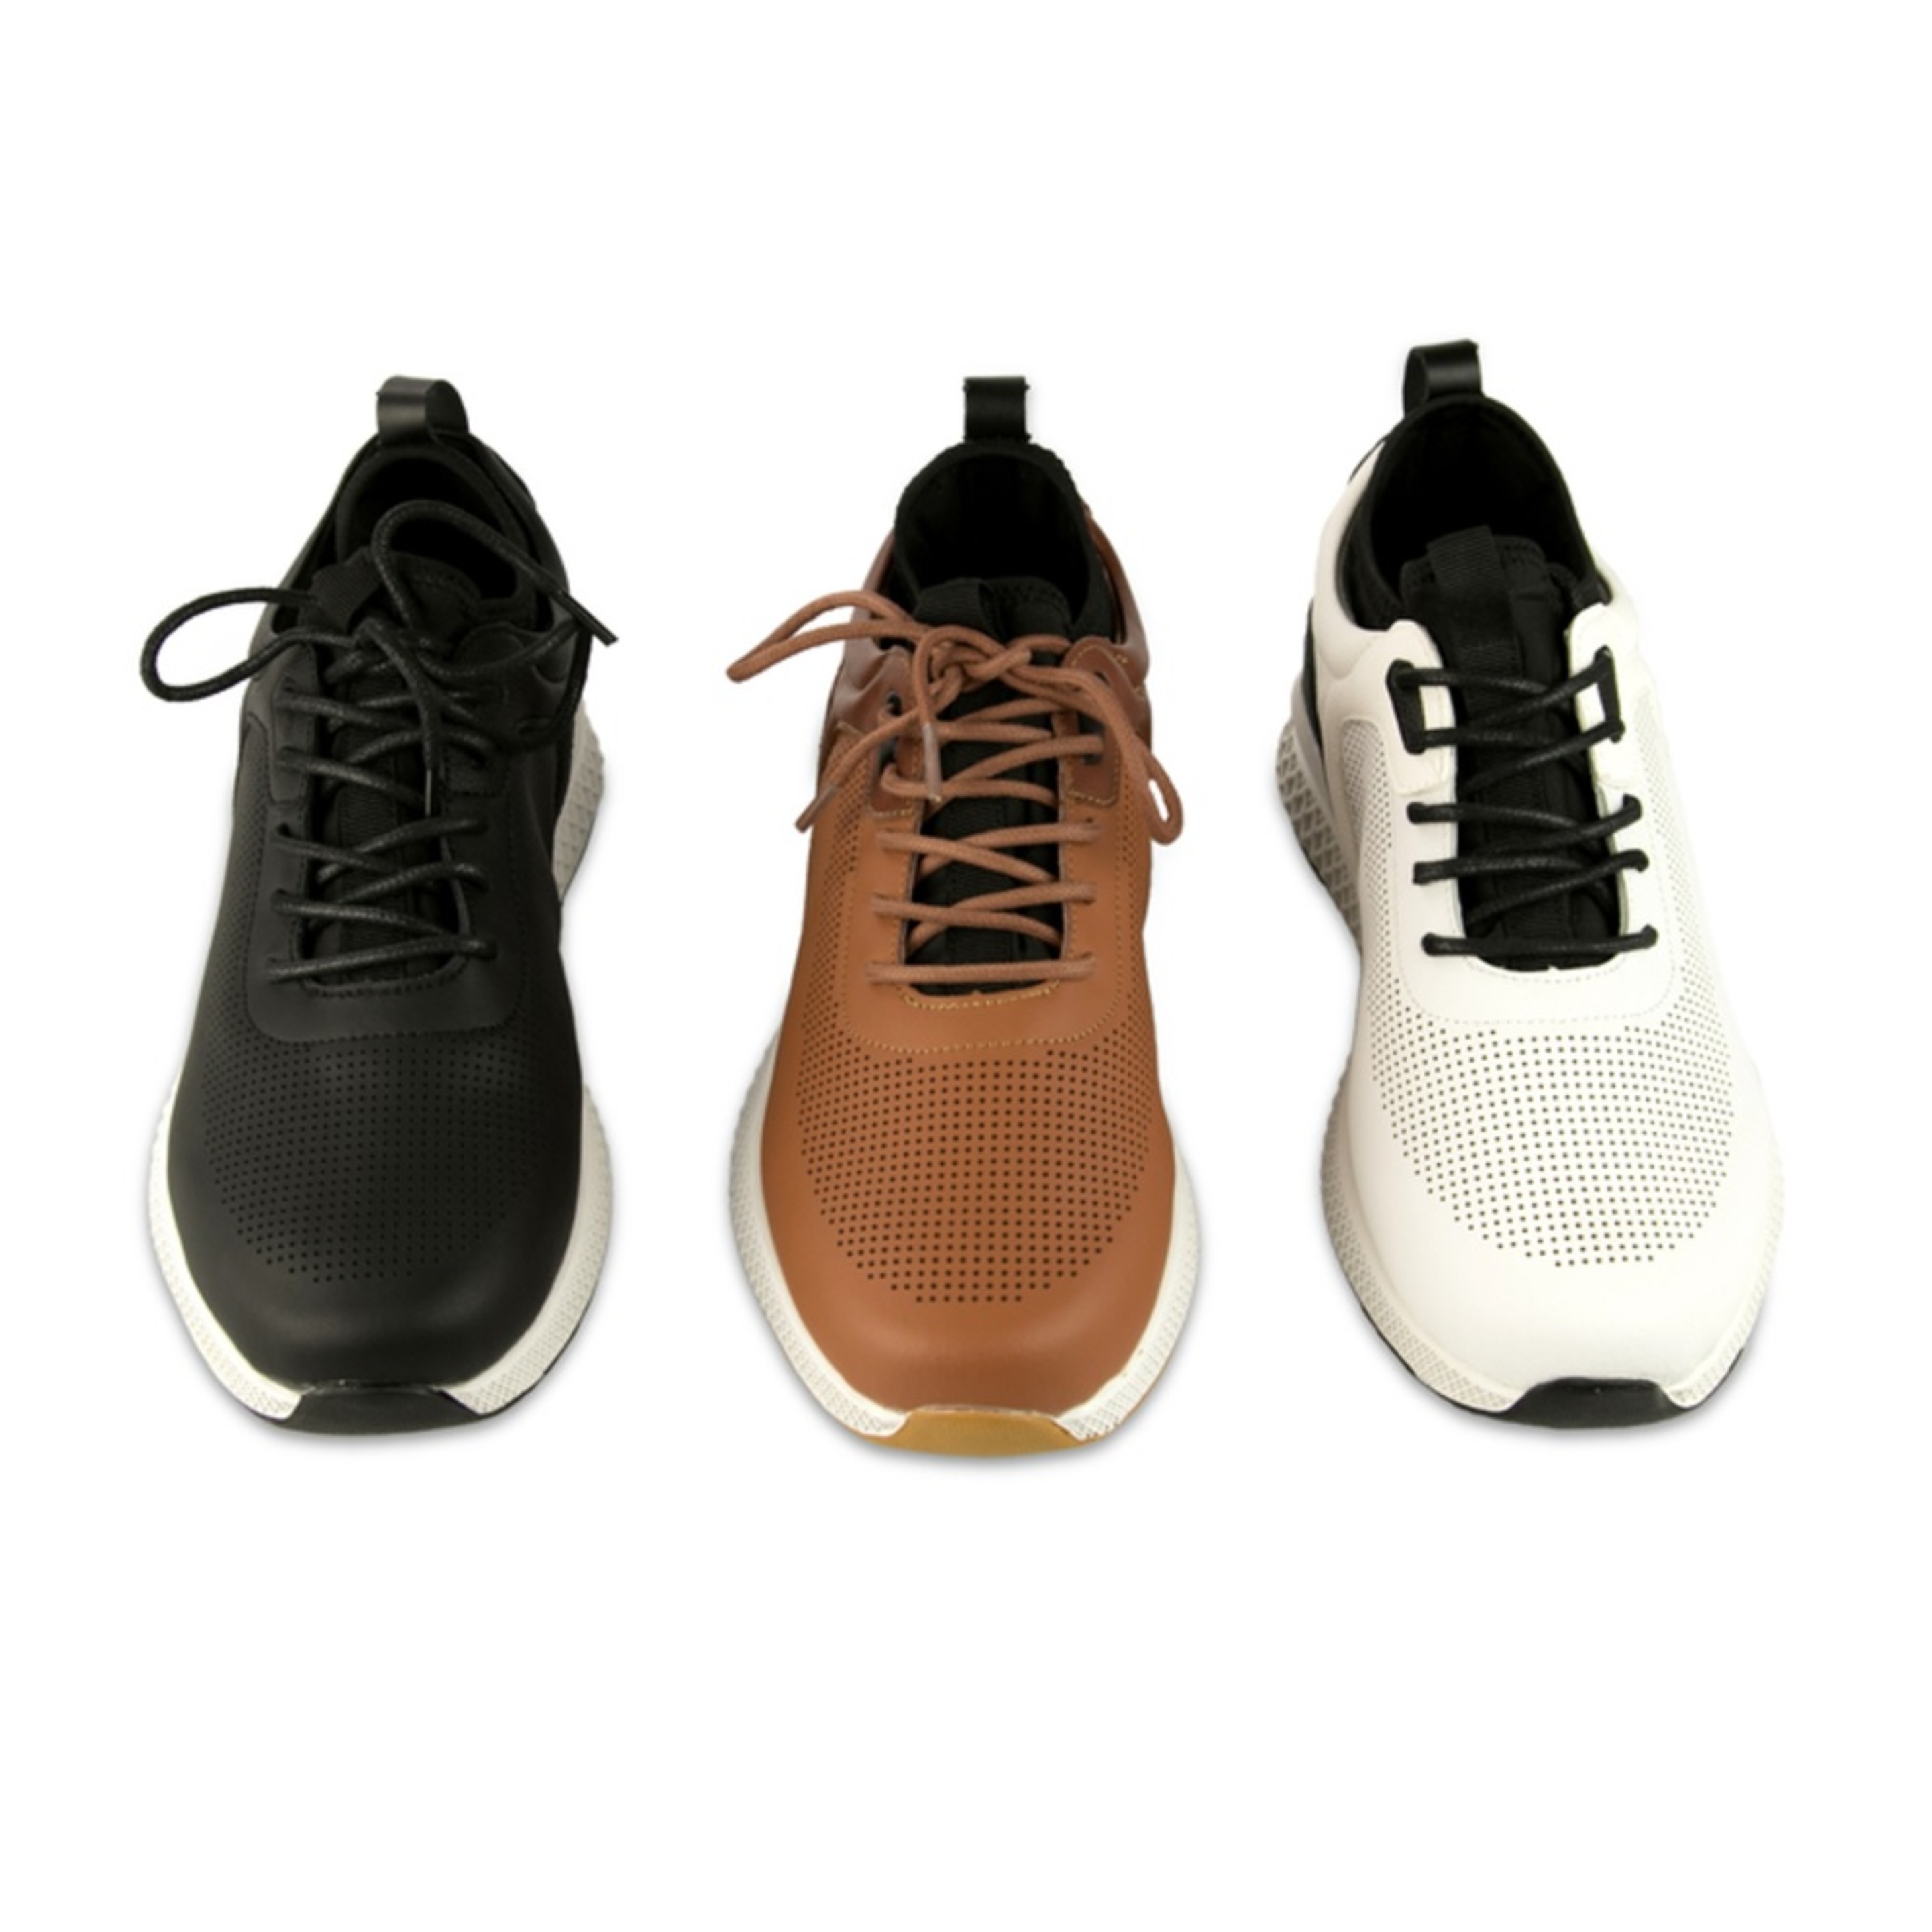 Zapatos De Golf Zerimar Con Troquelados - Negro - Zapatos Golf Hombre Zapatillas Piel  MKP